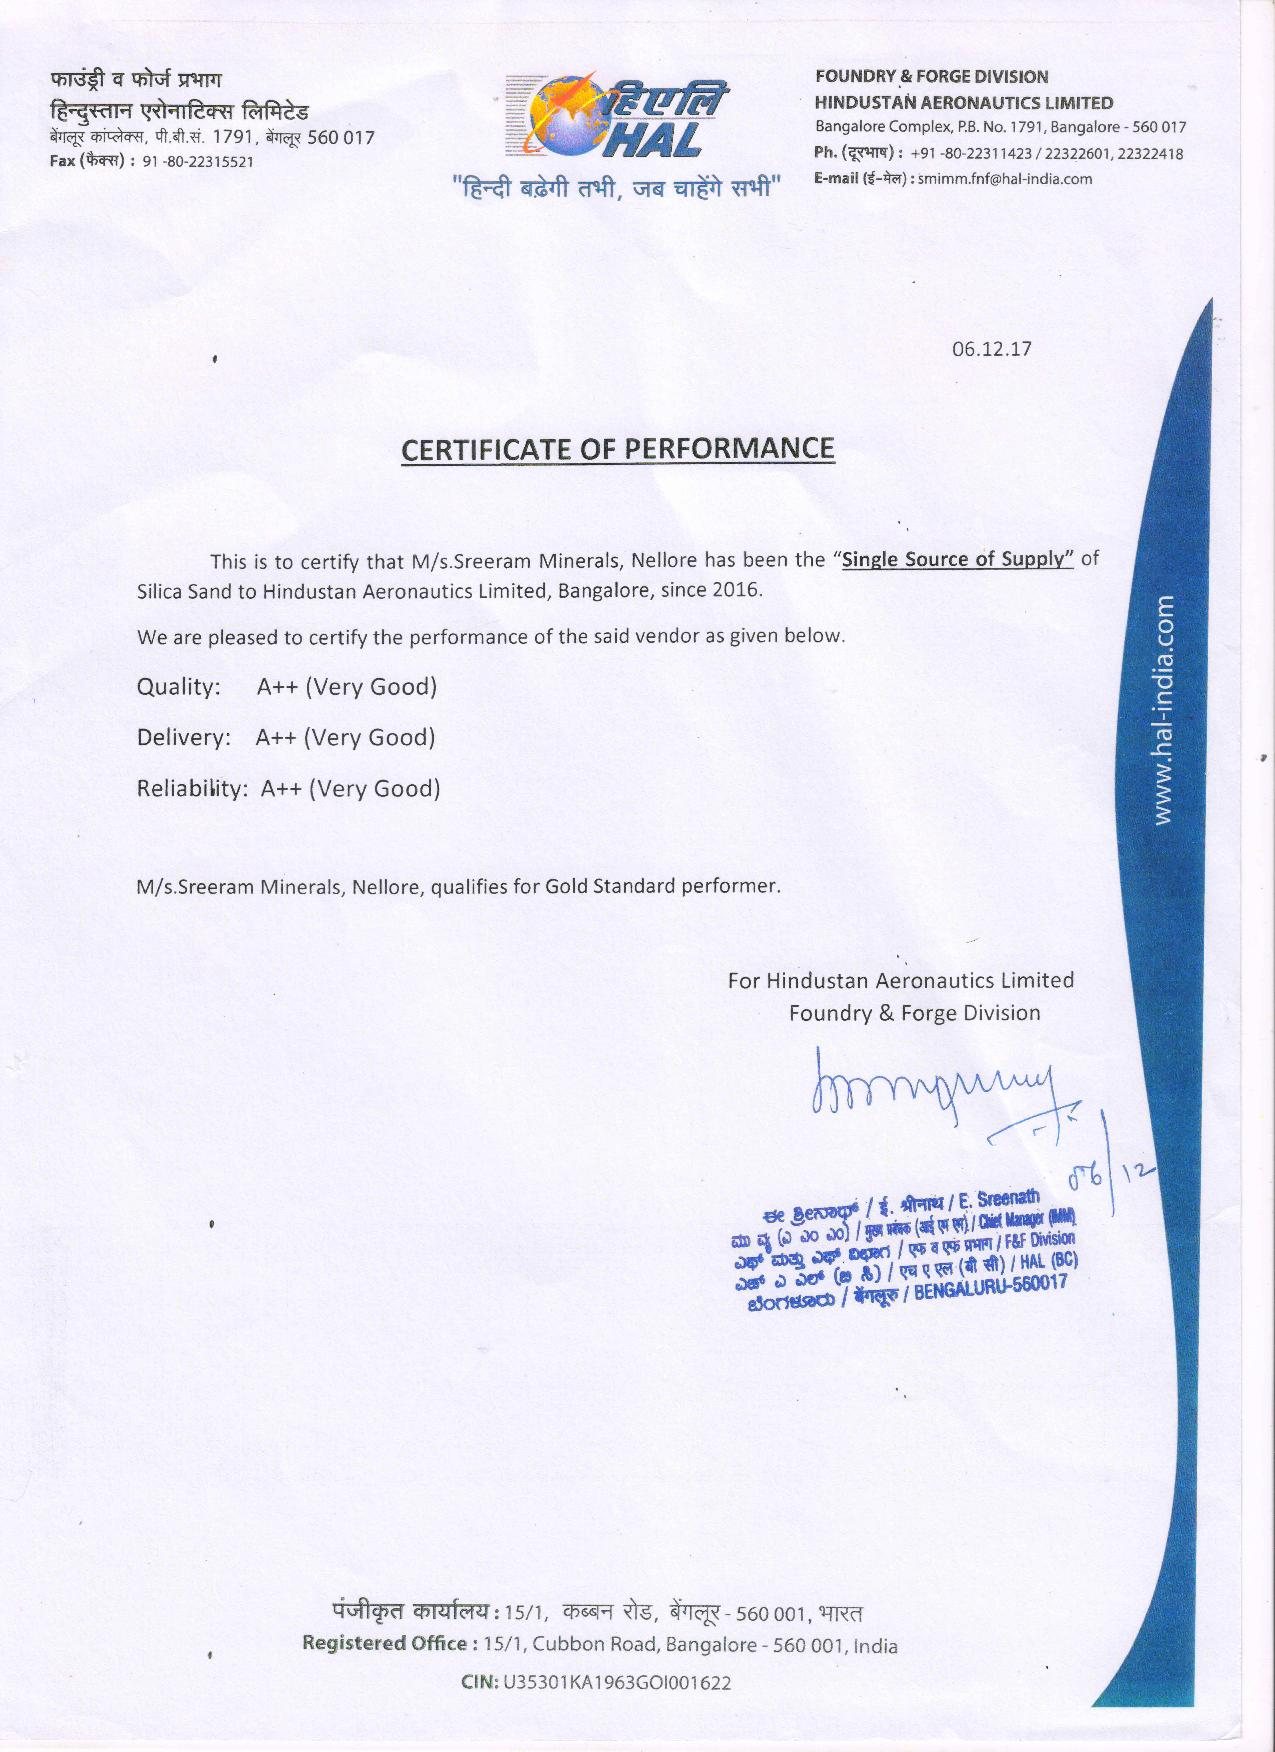 Testimonial : Mr. E. Sreenath Hindustan Aeronautics Limited (HAL) on - 2020-03-12 / 18:16:00